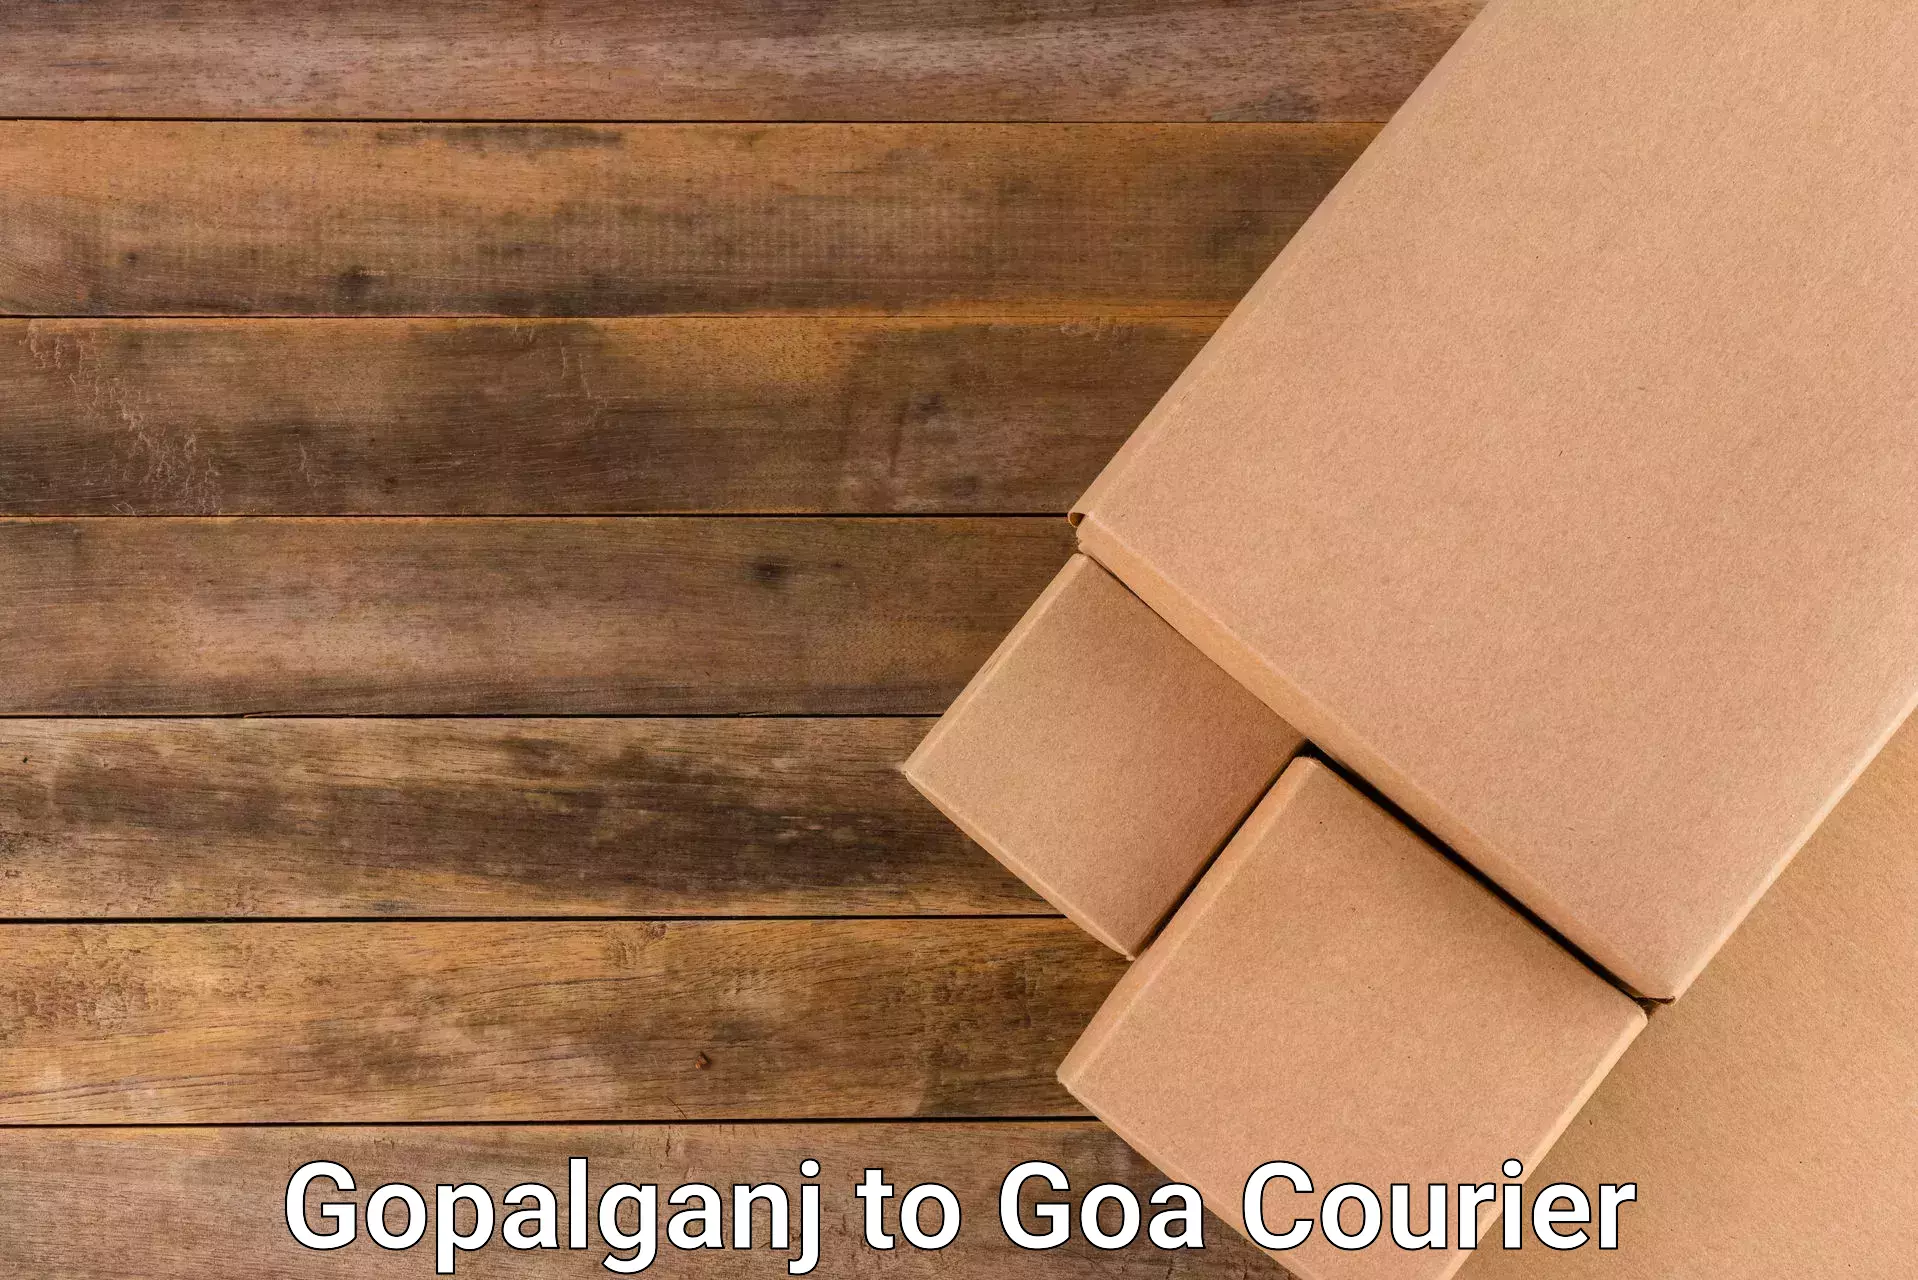 Express logistics service Gopalganj to Mormugao Port